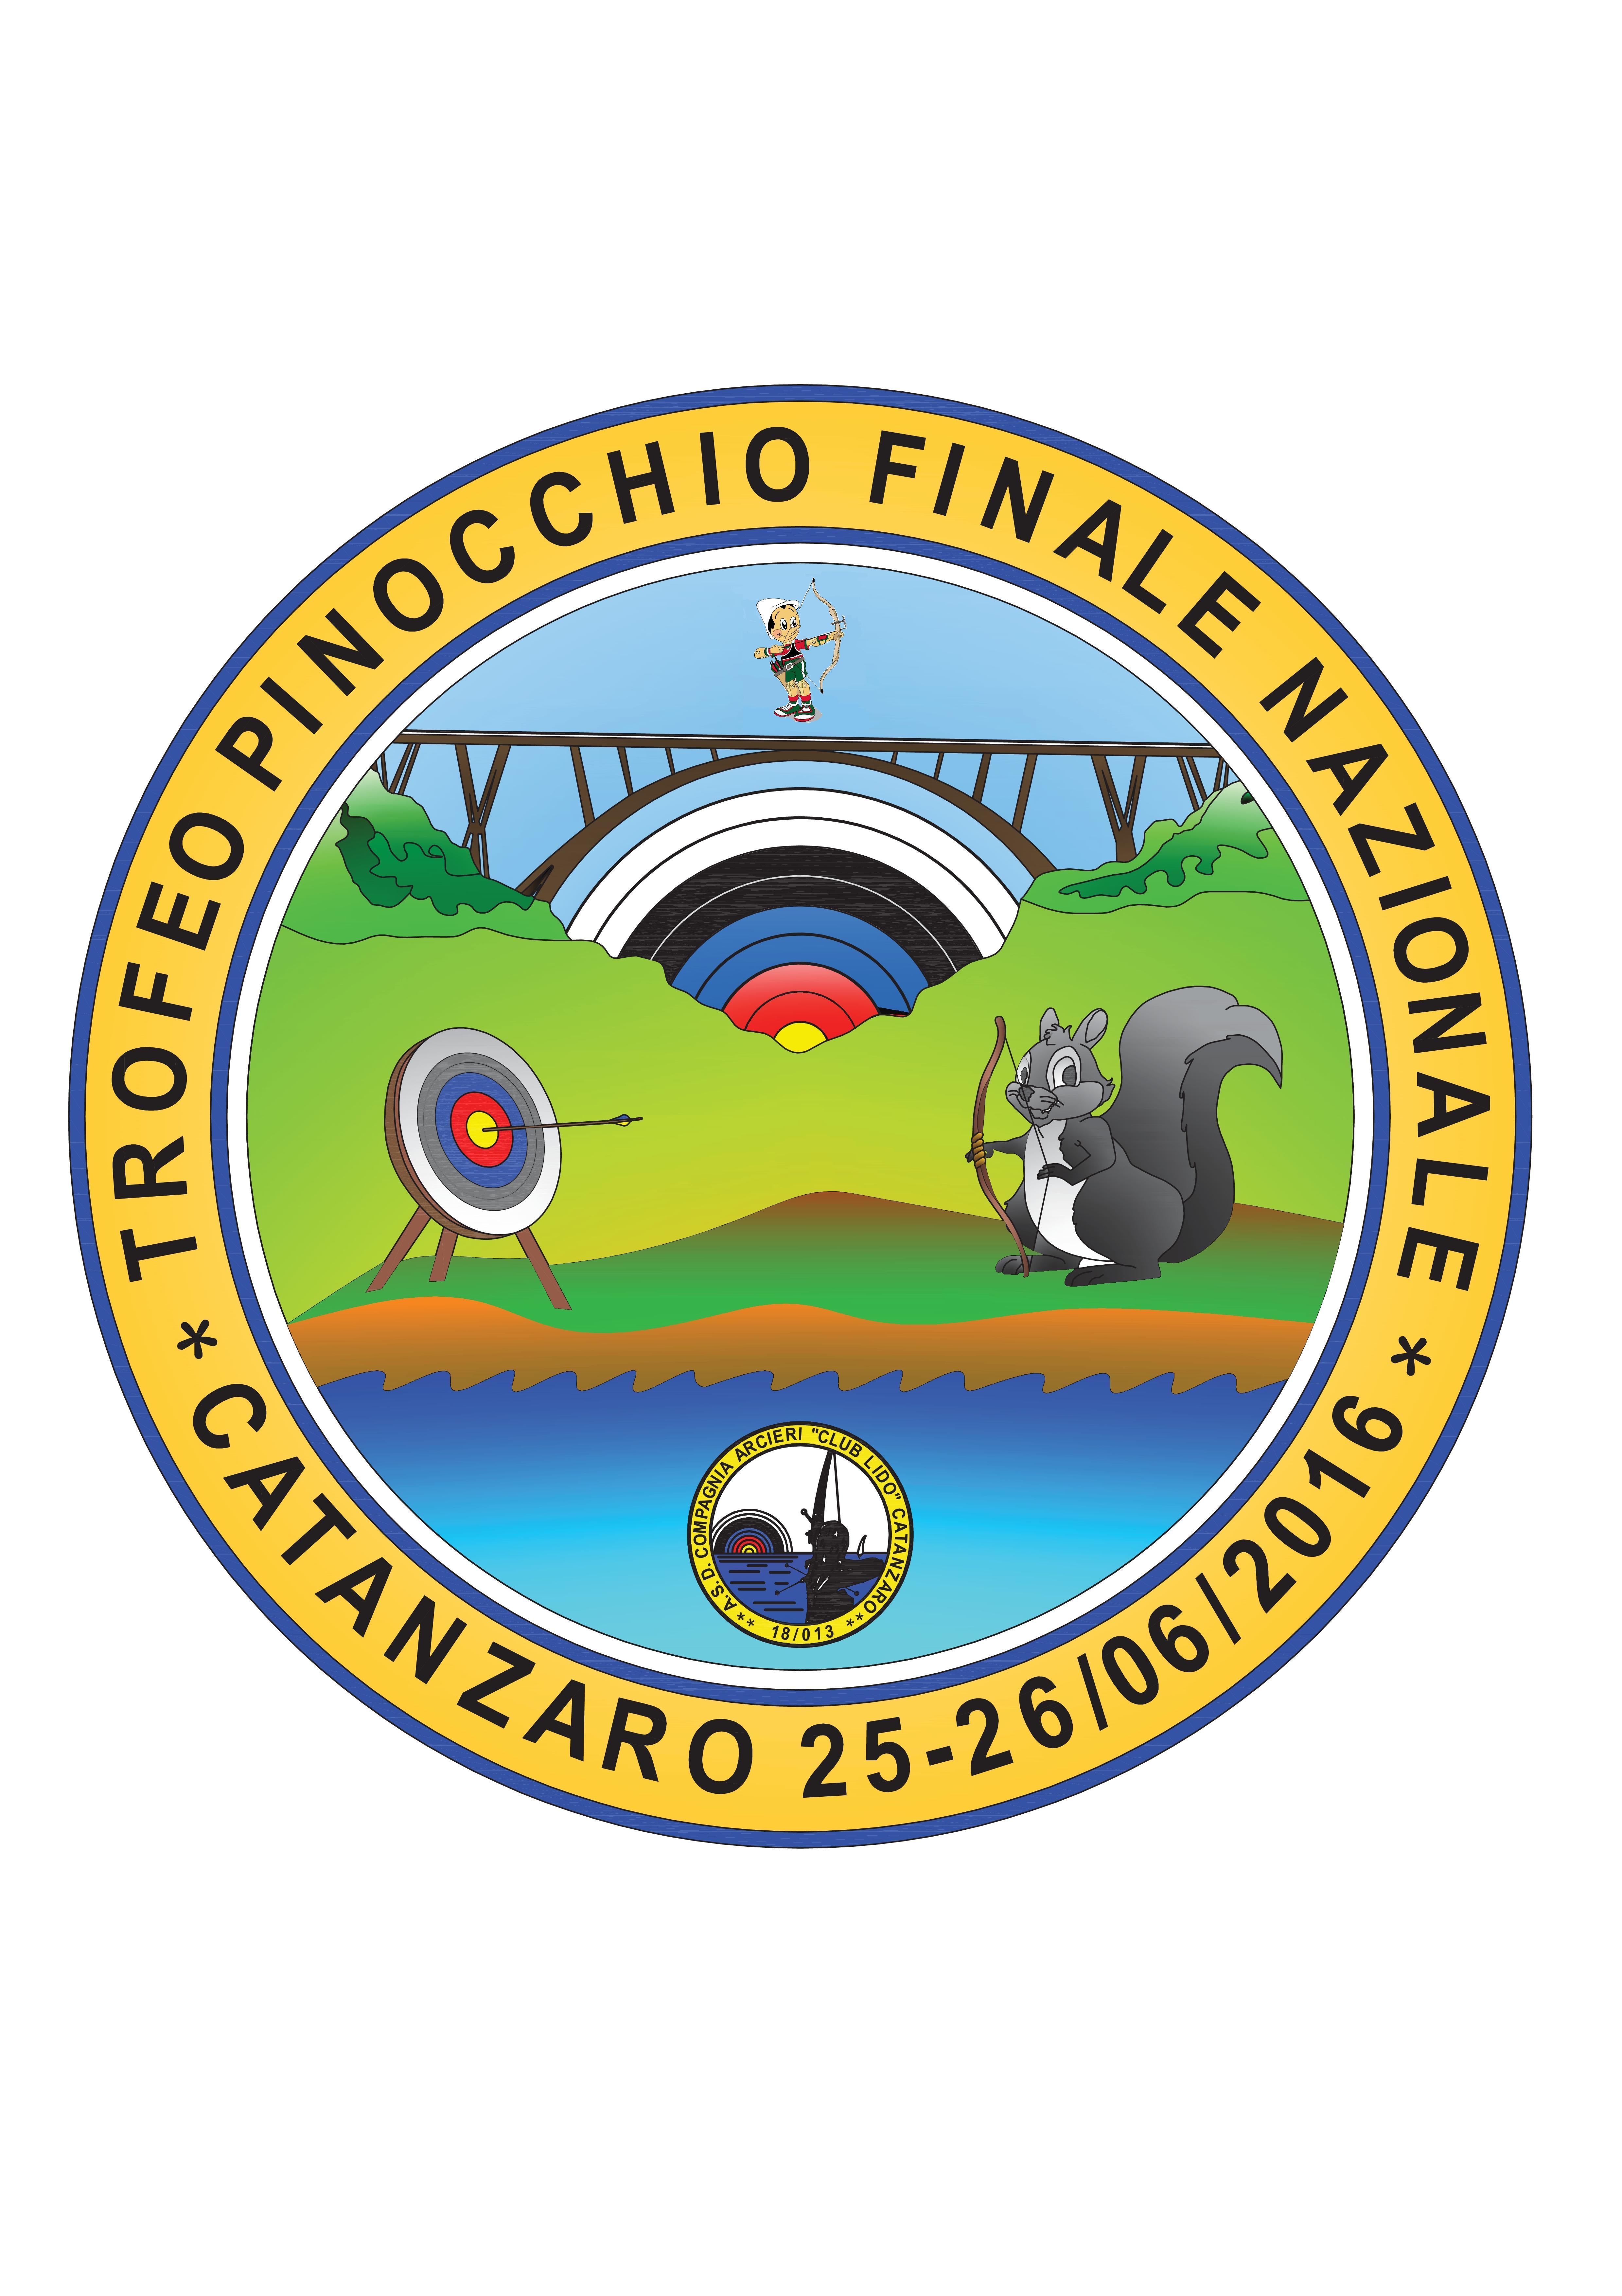 Trofeo Pinocchio - Finale Nazionale